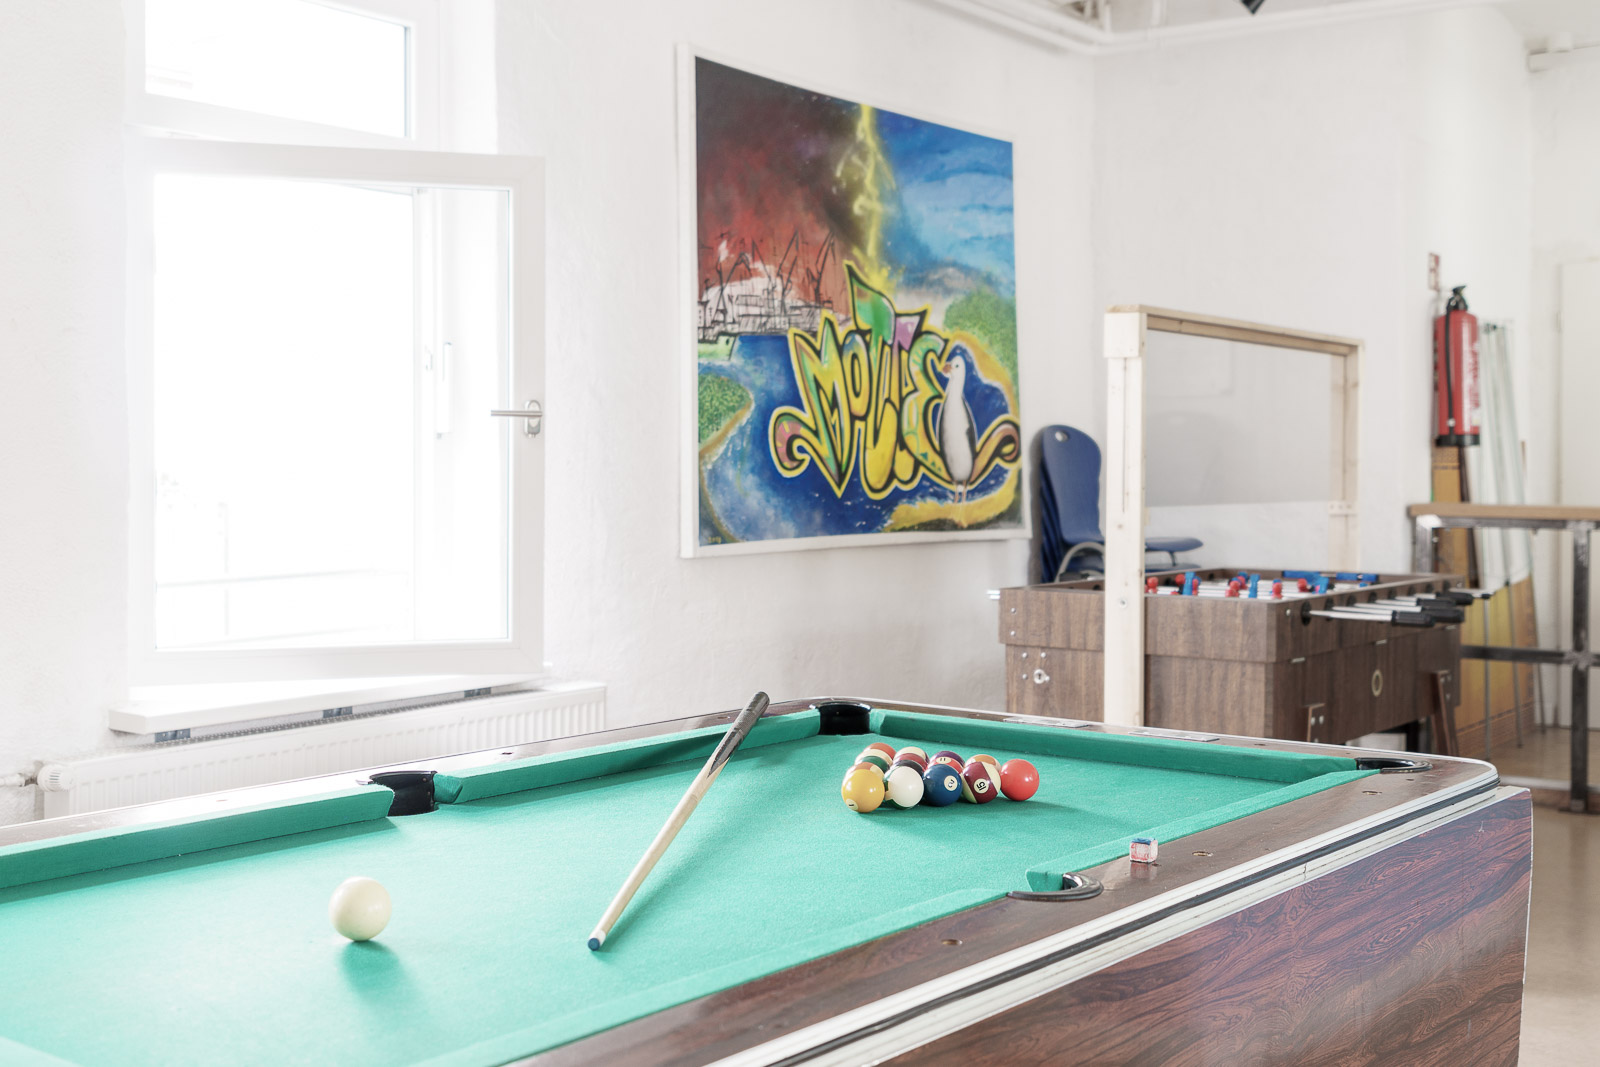 Aufenthaltsraum im Jugendbereich mit Billiardtisch, Tischkicker und Graffitti an der Wand